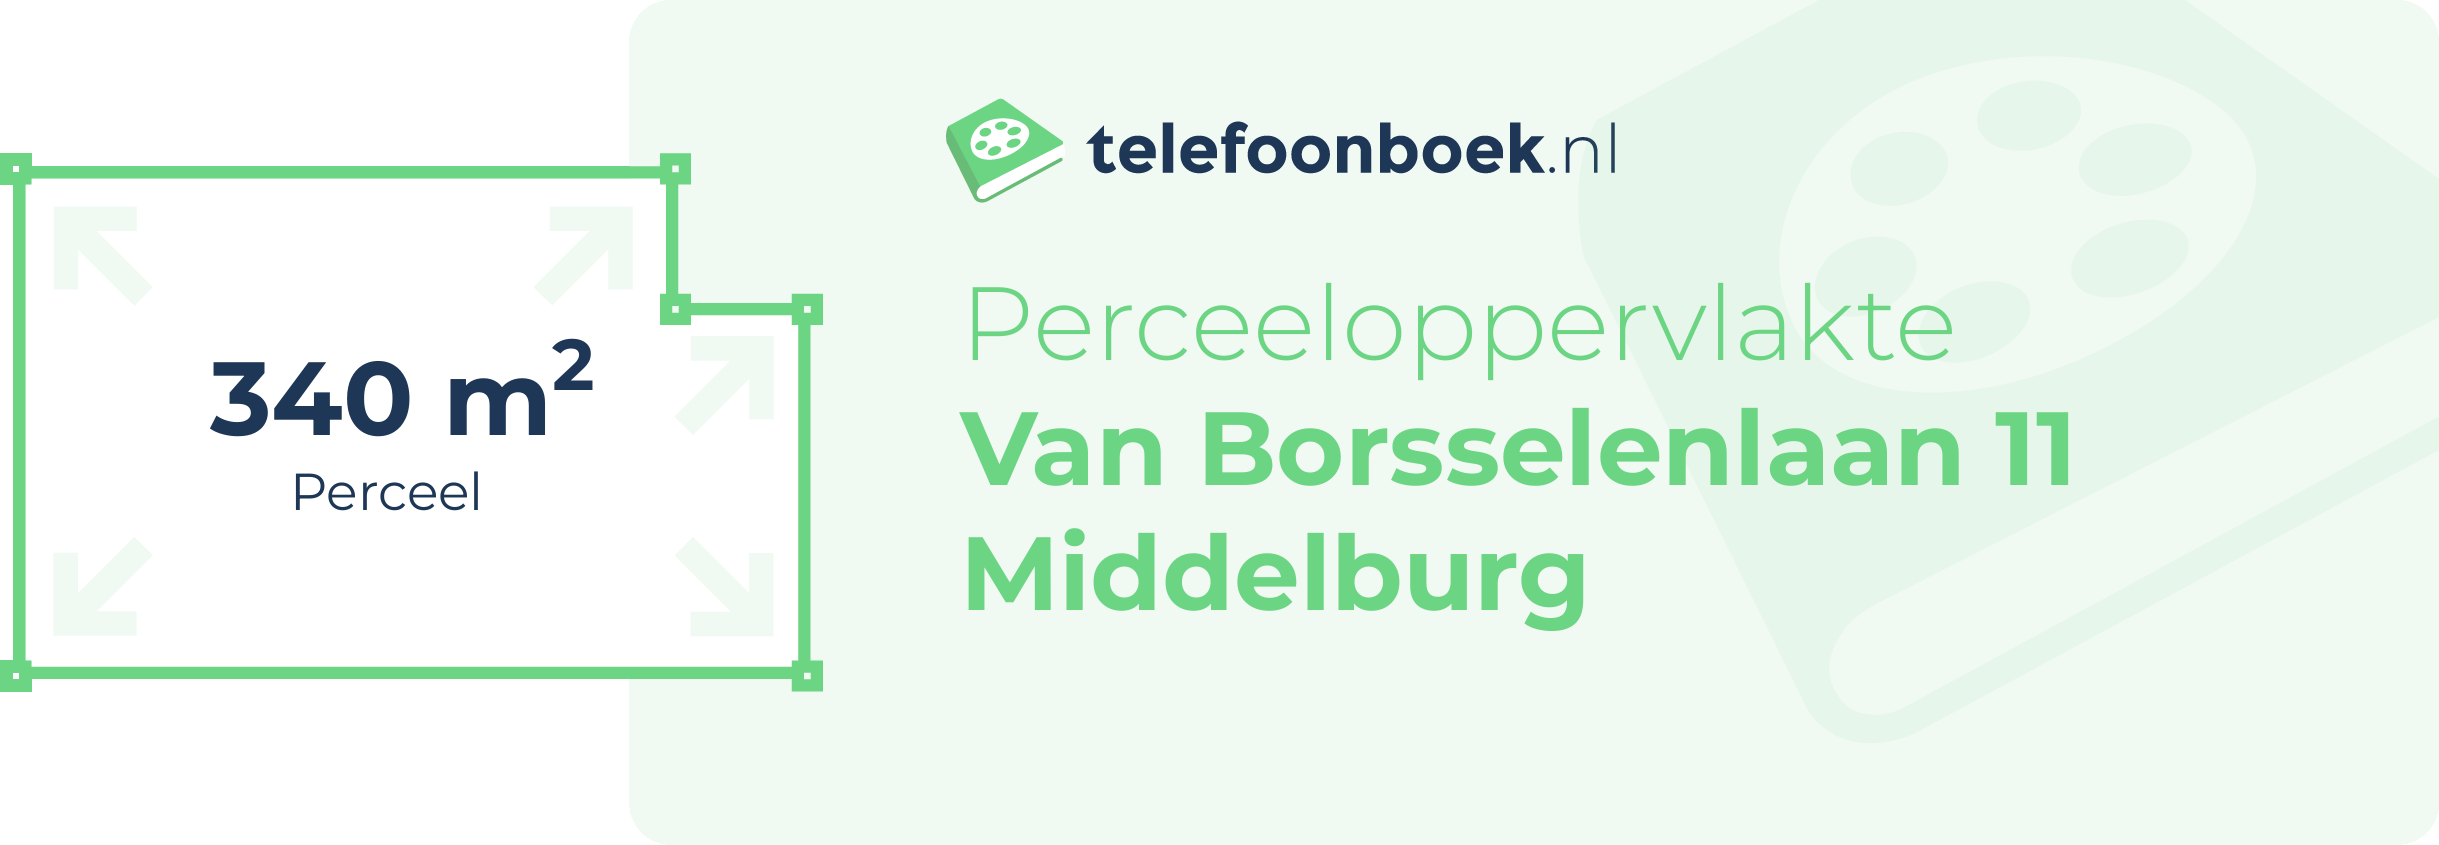 Perceeloppervlakte Van Borsselenlaan 11 Middelburg